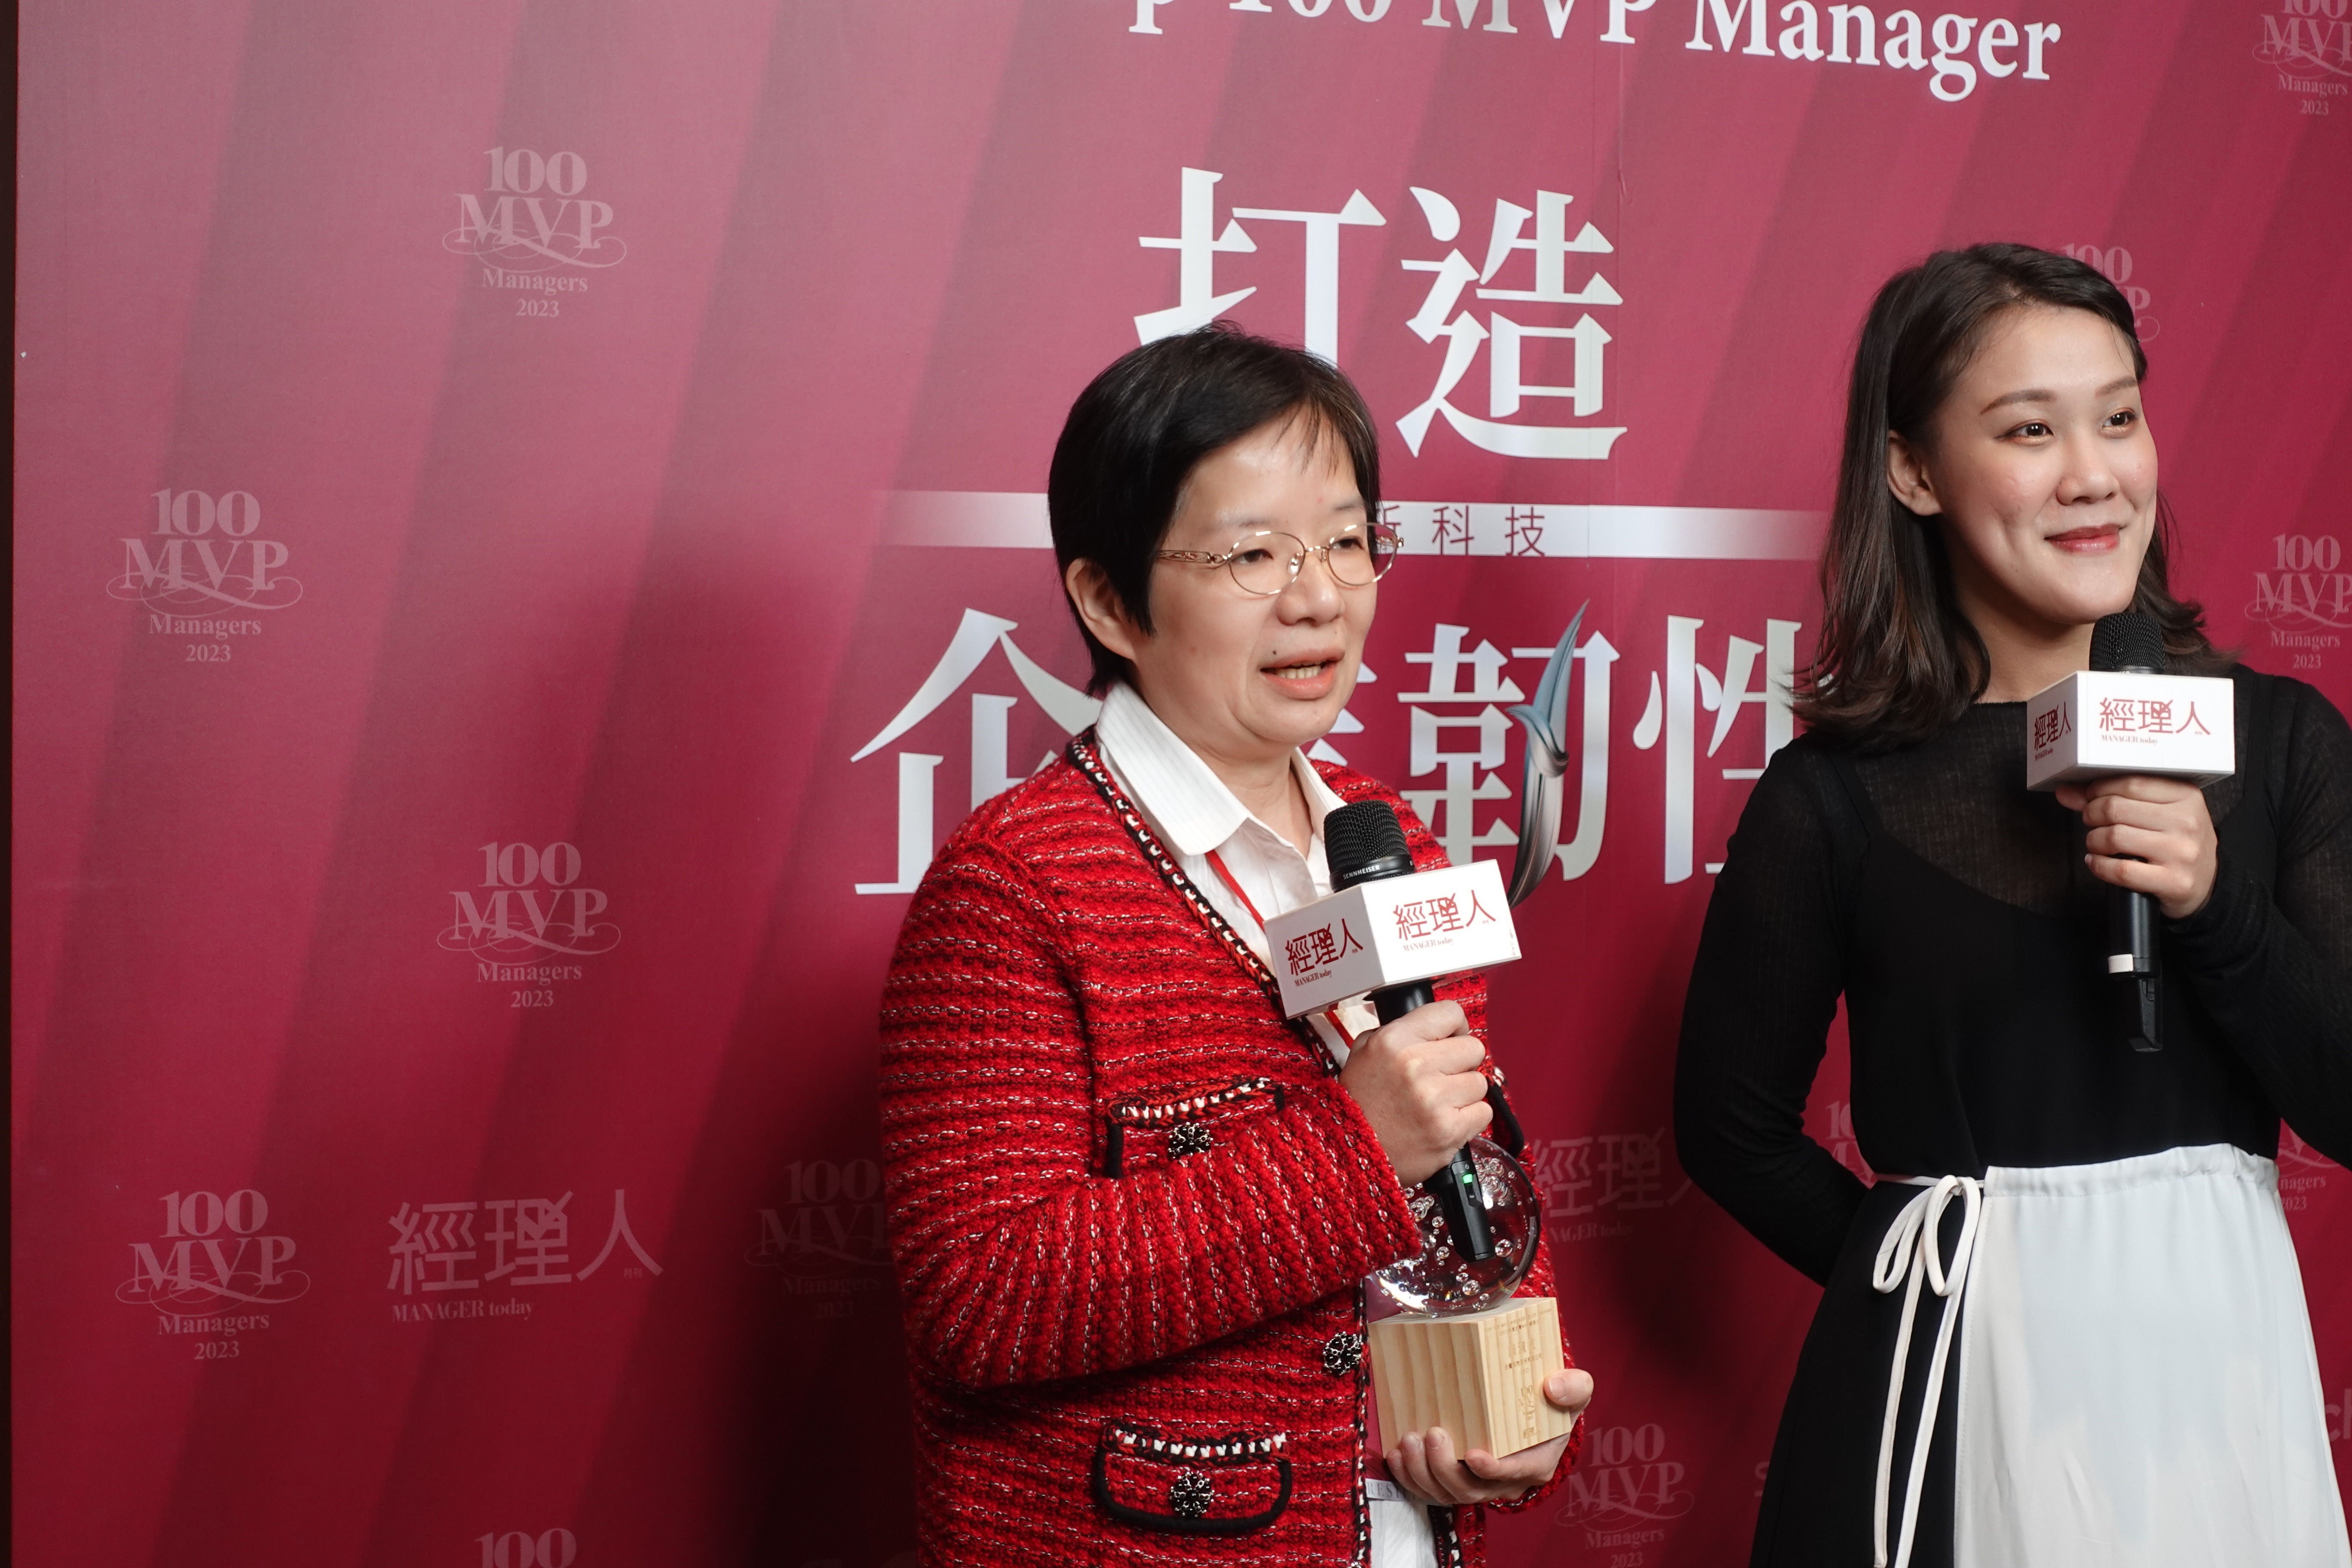 【最新訊息】佳麗執行長-陳淑敏獲得112年台灣百大MVP專業經理人獎-產品創新服務